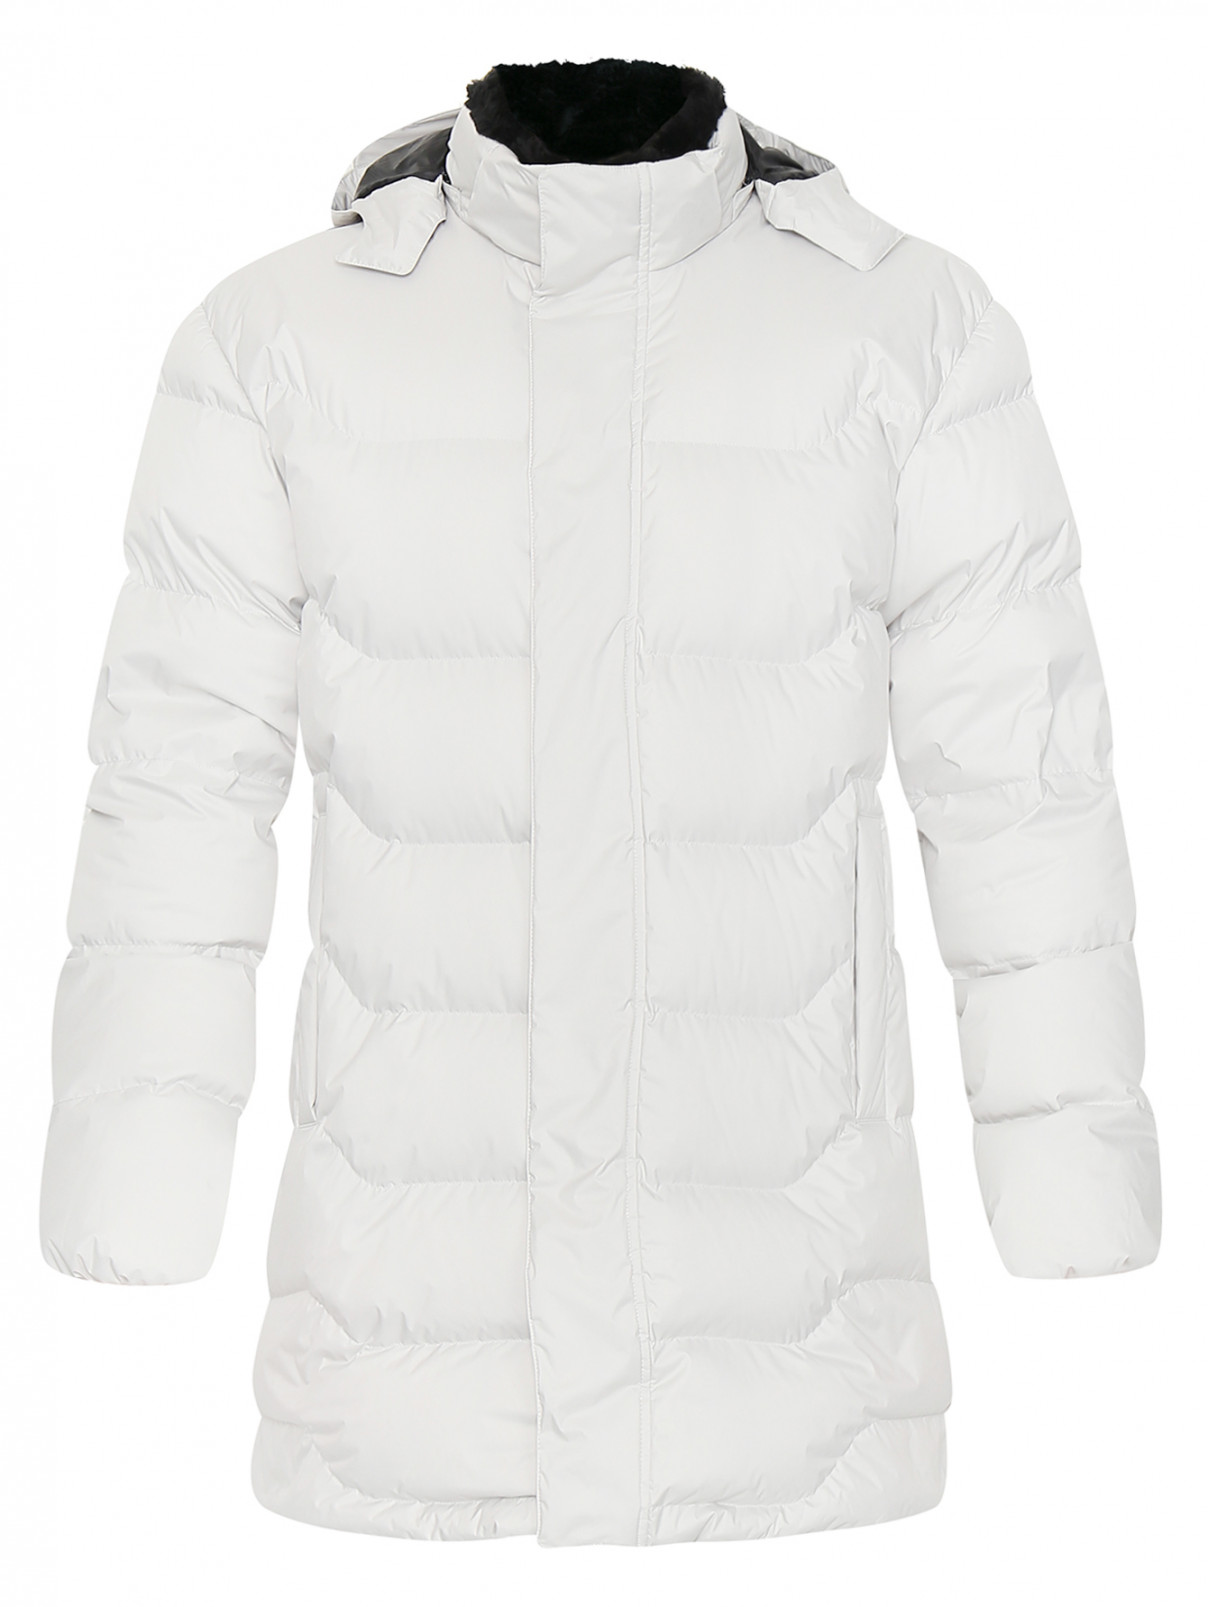 Куртка стеганая на молнии Ermenegildo Zegna  –  Общий вид  – Цвет:  Белый